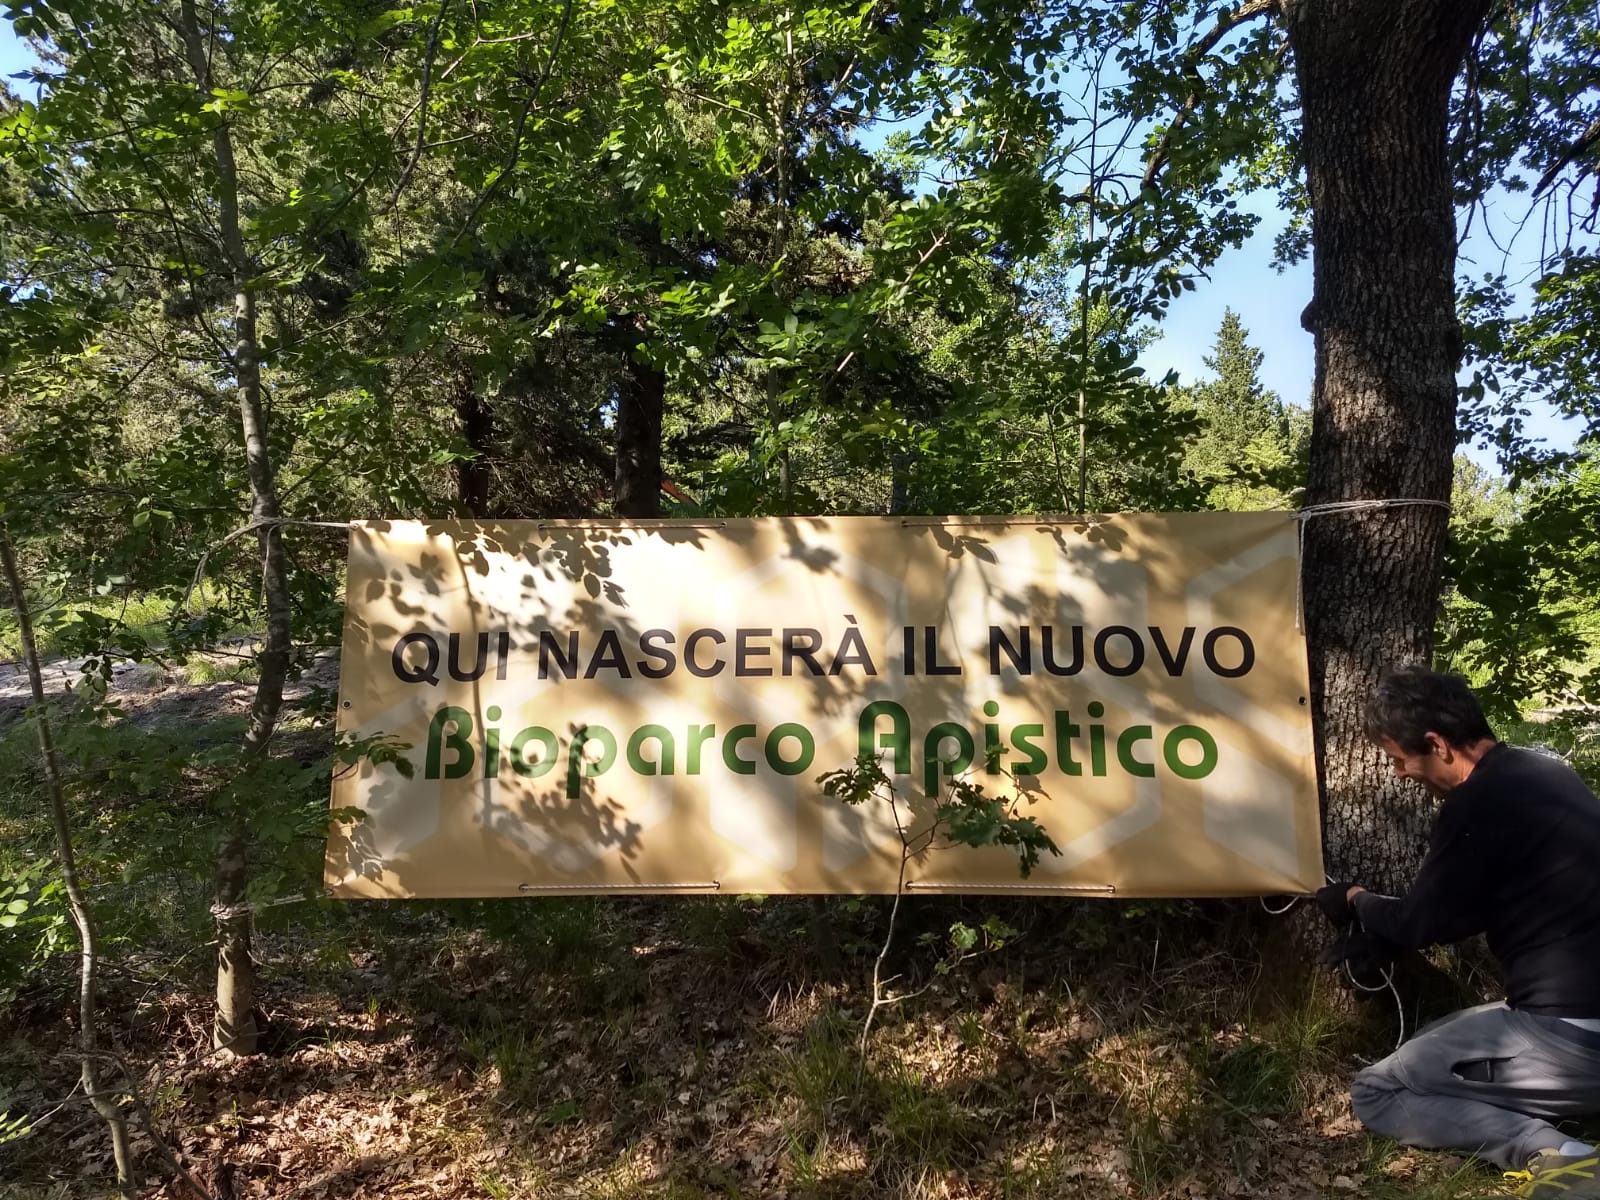 Bioparco apistico a Montecchio, i lavori stanno per cominciare. Canti: “Area di tutela della sottospecie di ape da miele autoctona”